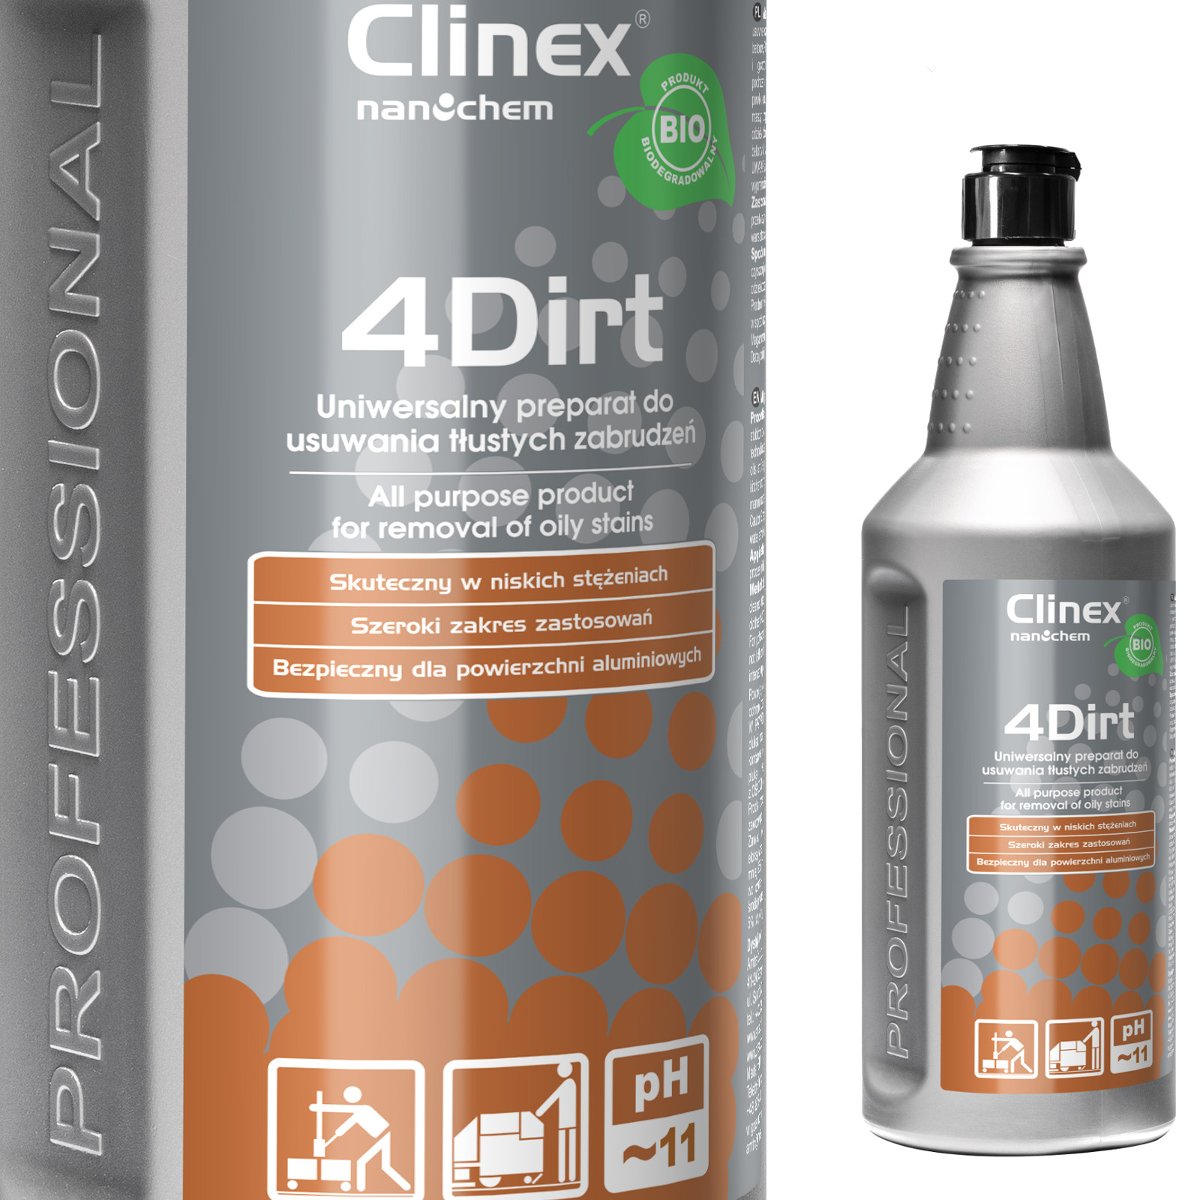 Clinex 4DIRT biodegradowalny uniwersalny preparat do usuwania tłustych zabrudzeń